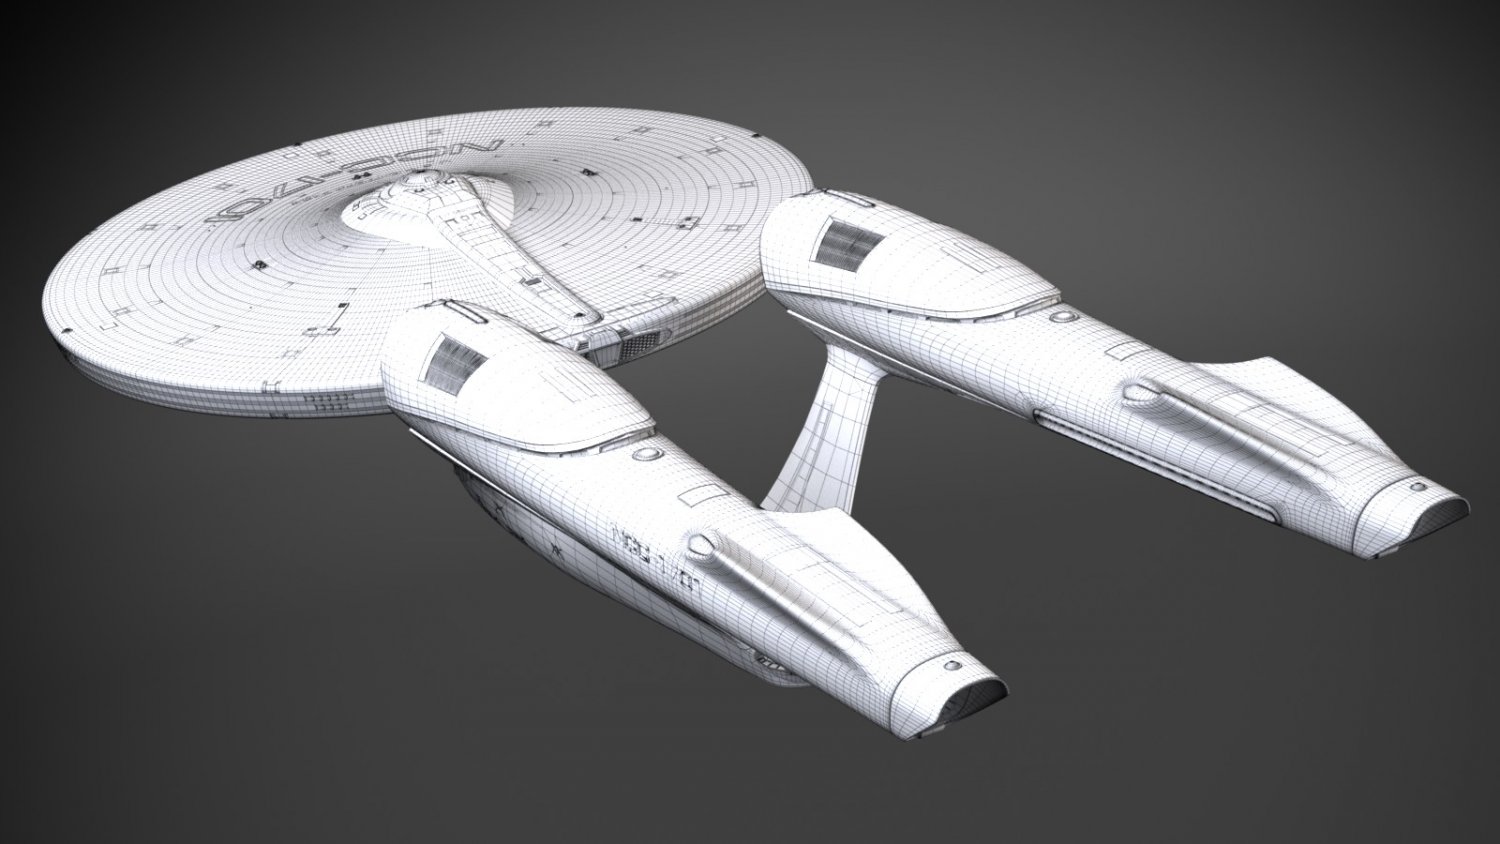 Star Trek Enterprise NCC 1701 3D Model in Fantasy